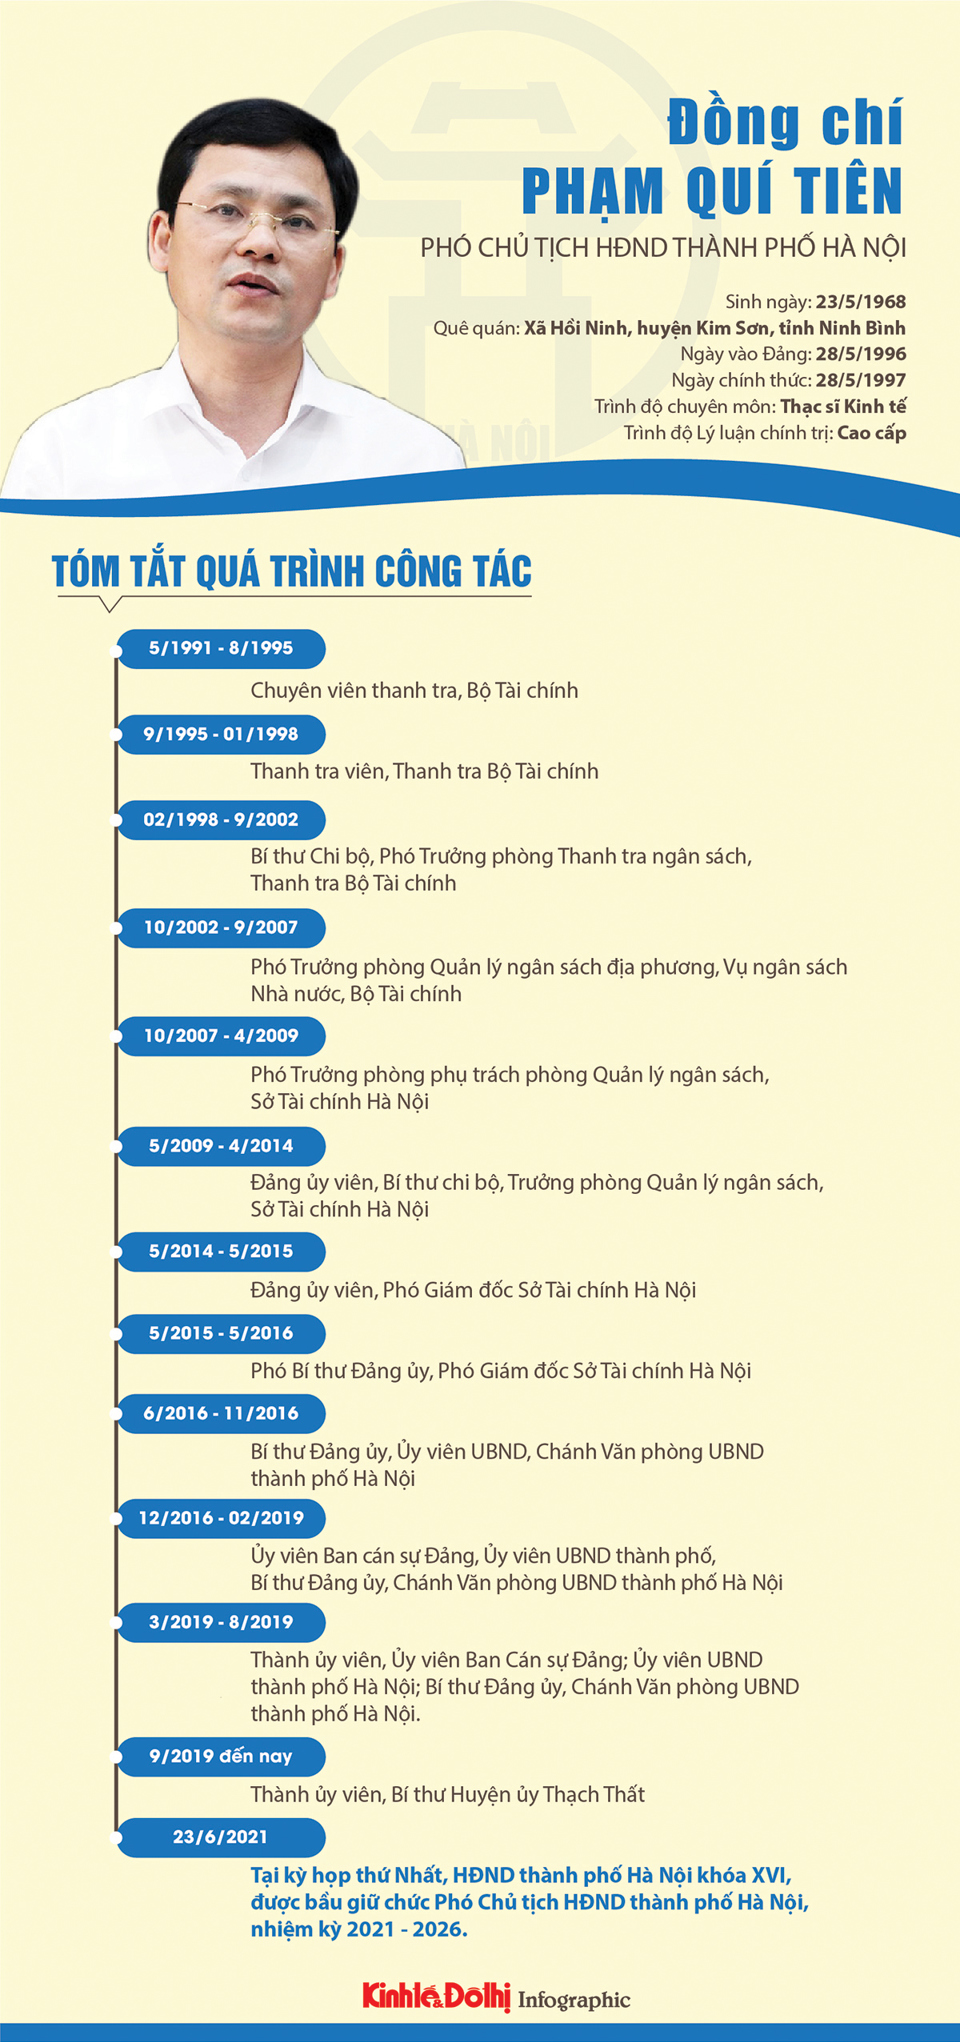 [Infographic] Chân dung Phó Chủ tịch HĐND TP Hà Nội khóa XVI Phạm Quí Tiên - Ảnh 1